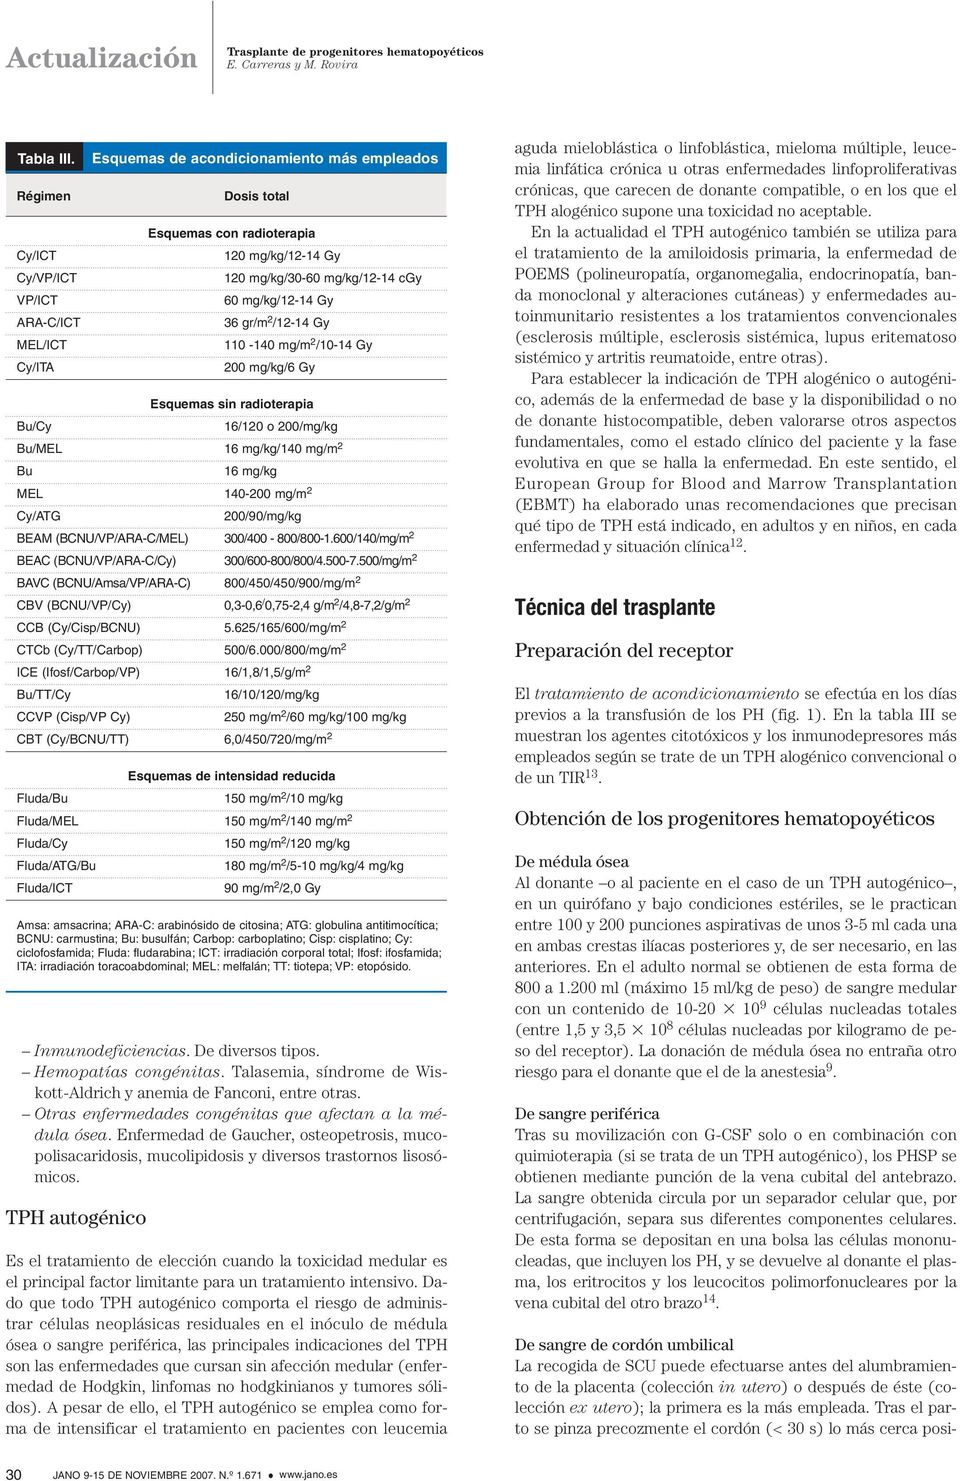 Enfermedad de Gaucher, osteopetrosis, mucopolisacaridosis, mucolipidosis y diversos trastornos lisosómicos.